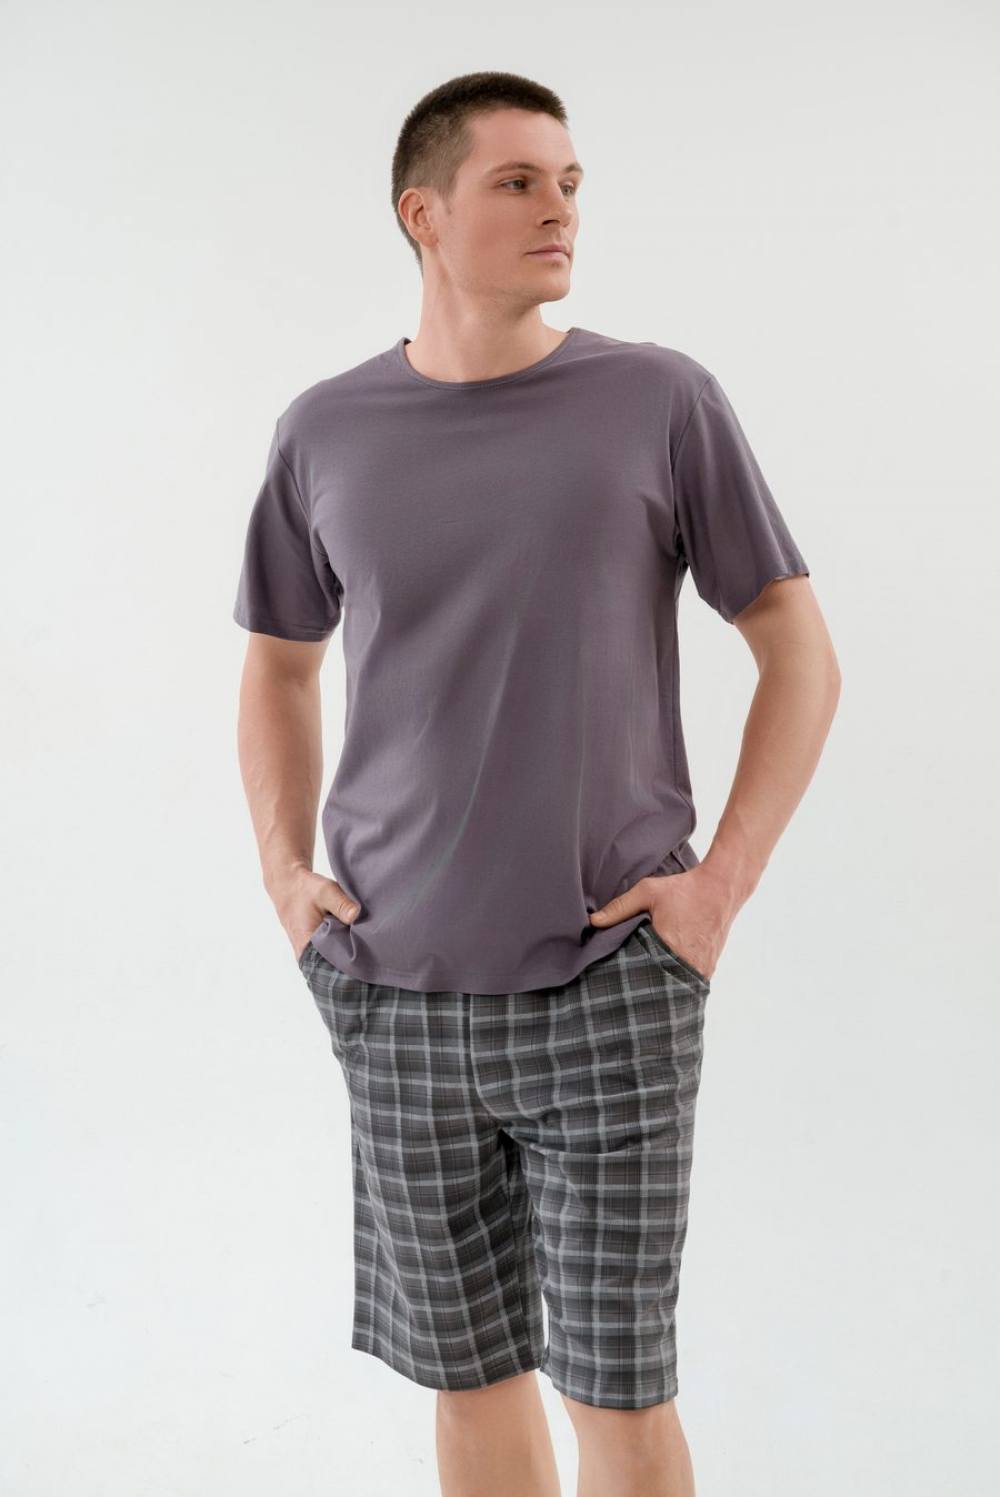 Пижама мужская с шортами. Артикул 000005431